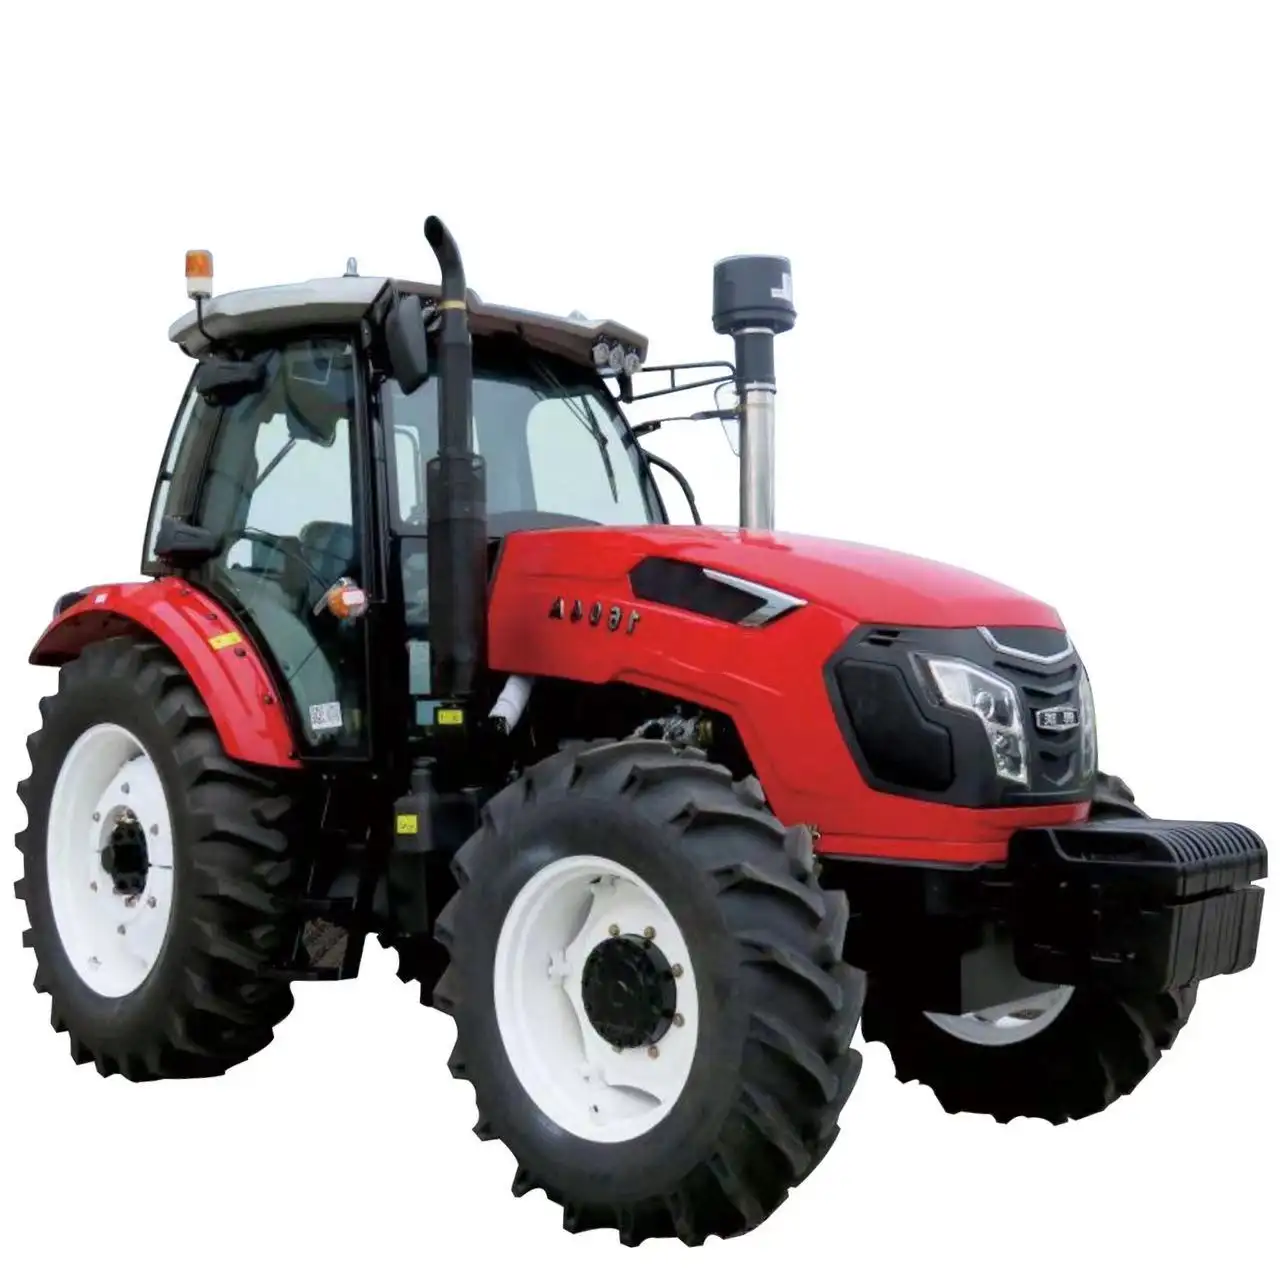 Tolcat4wd 4x4 30hp 50hp 80hp 120hp mini trattori agricoli usati kubota agricoltura macchine agricole trattore agricolo economico in vendita